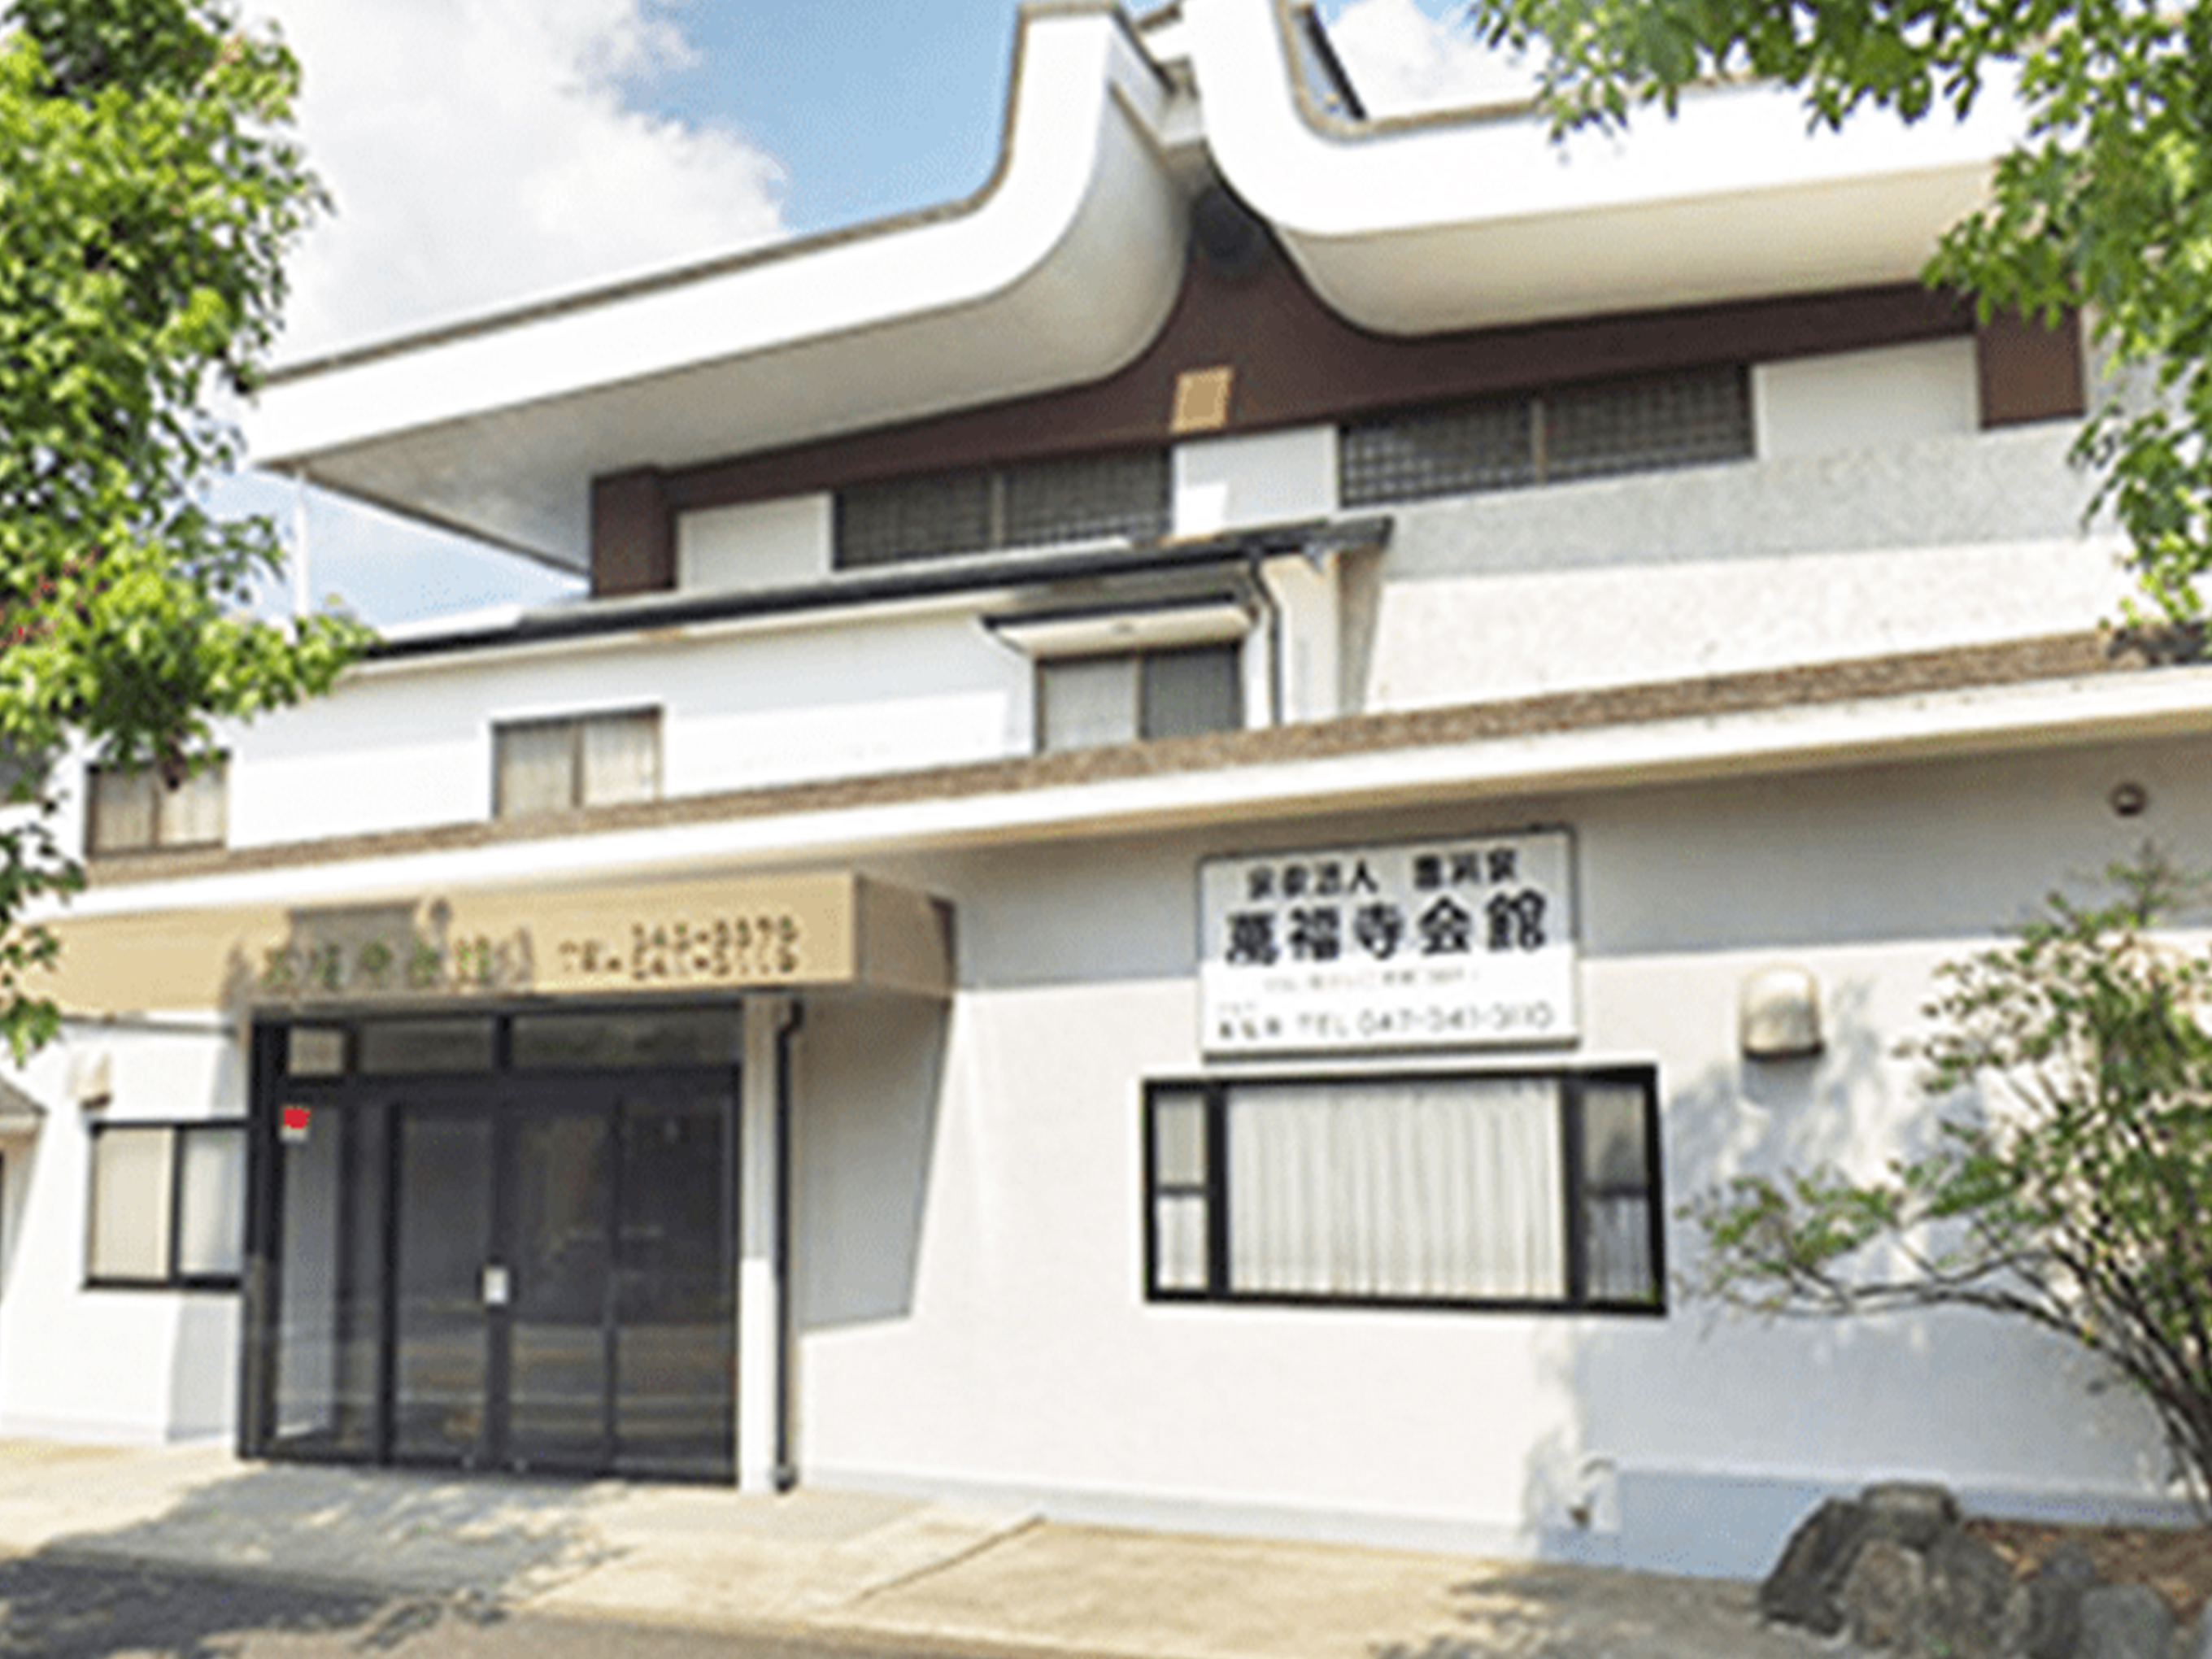 松戸で葬儀・葬式・家族葬が税込10.45万円からできる小さな森の家 萬福寺会館の外観